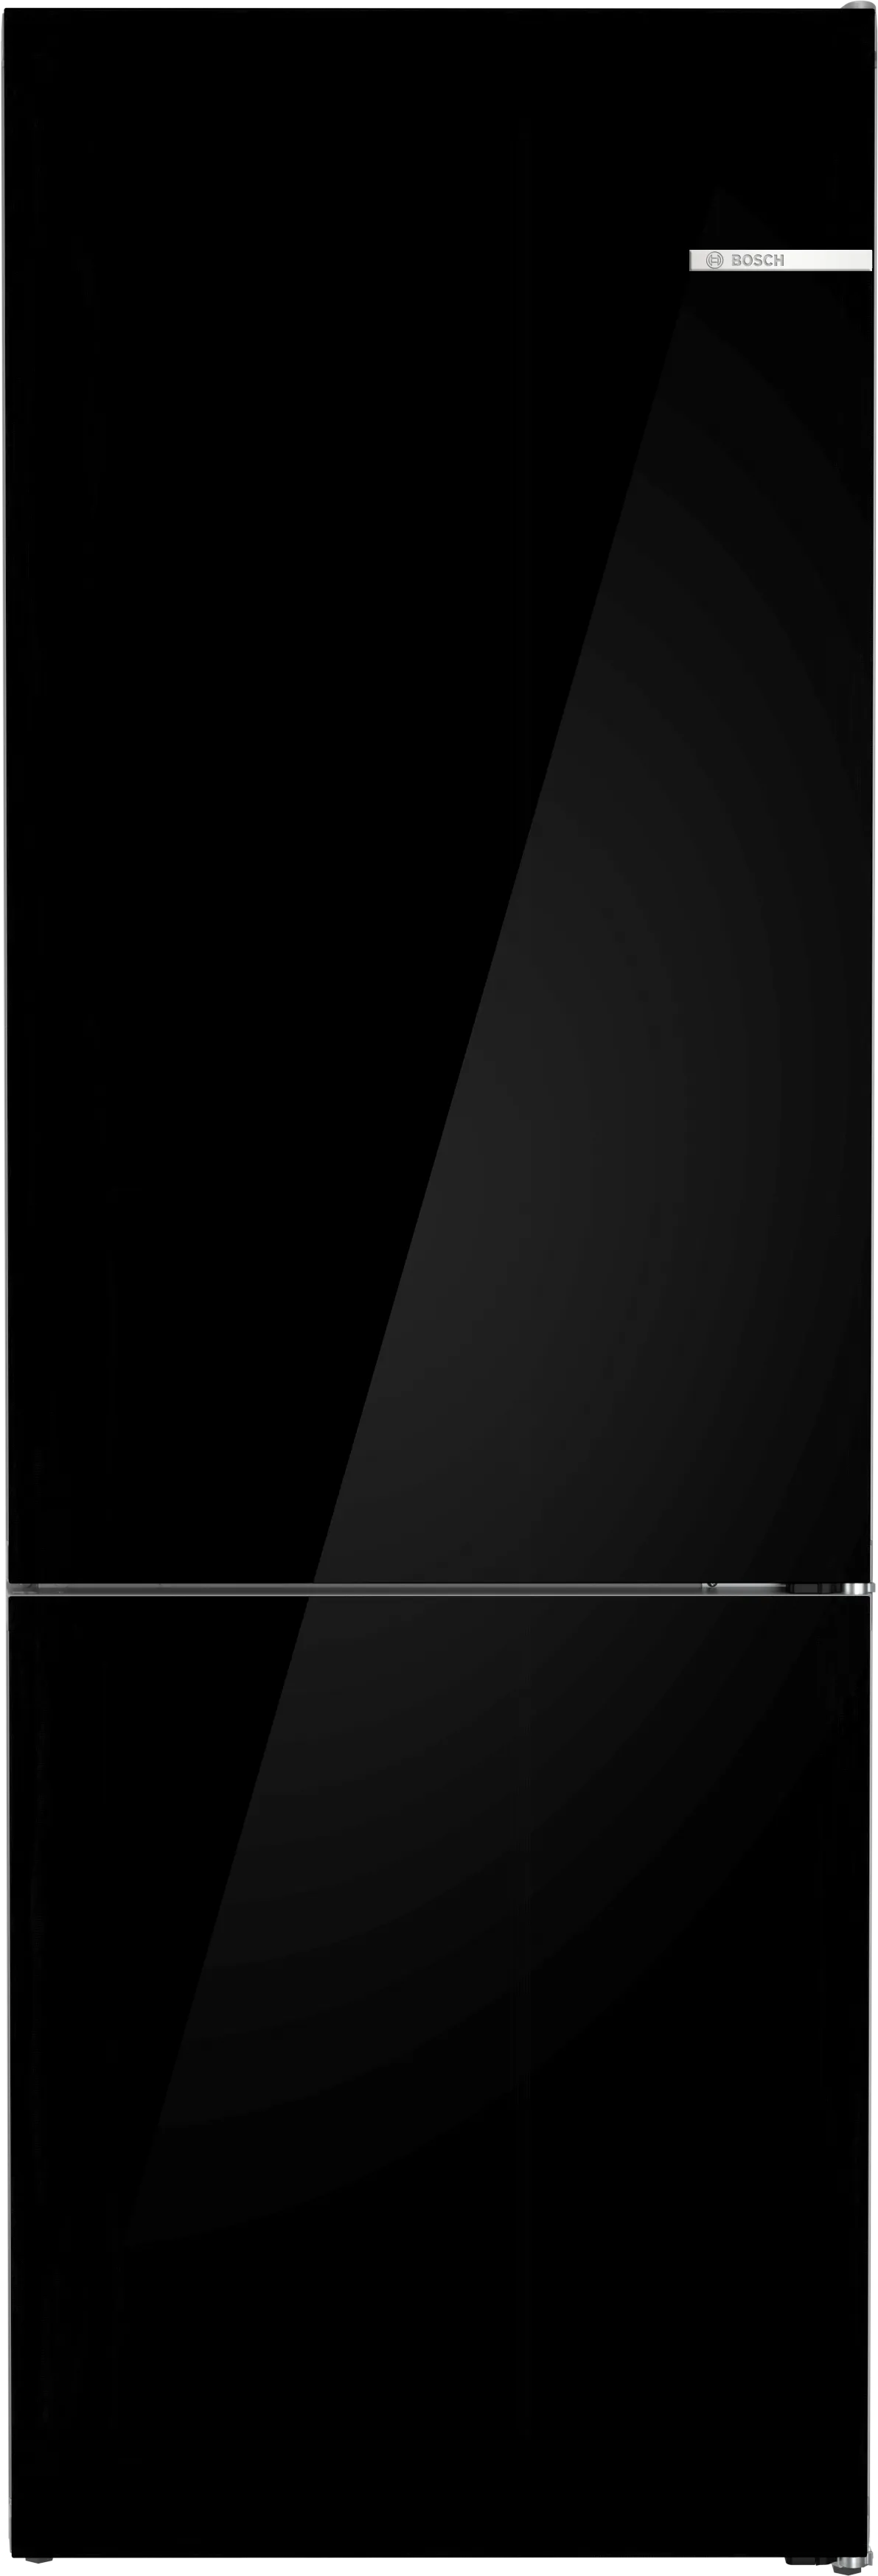 Σειρά 6 Ελεύθερος ψυγειοκαταψύκτης 203 x 70 cm Μαύρο 